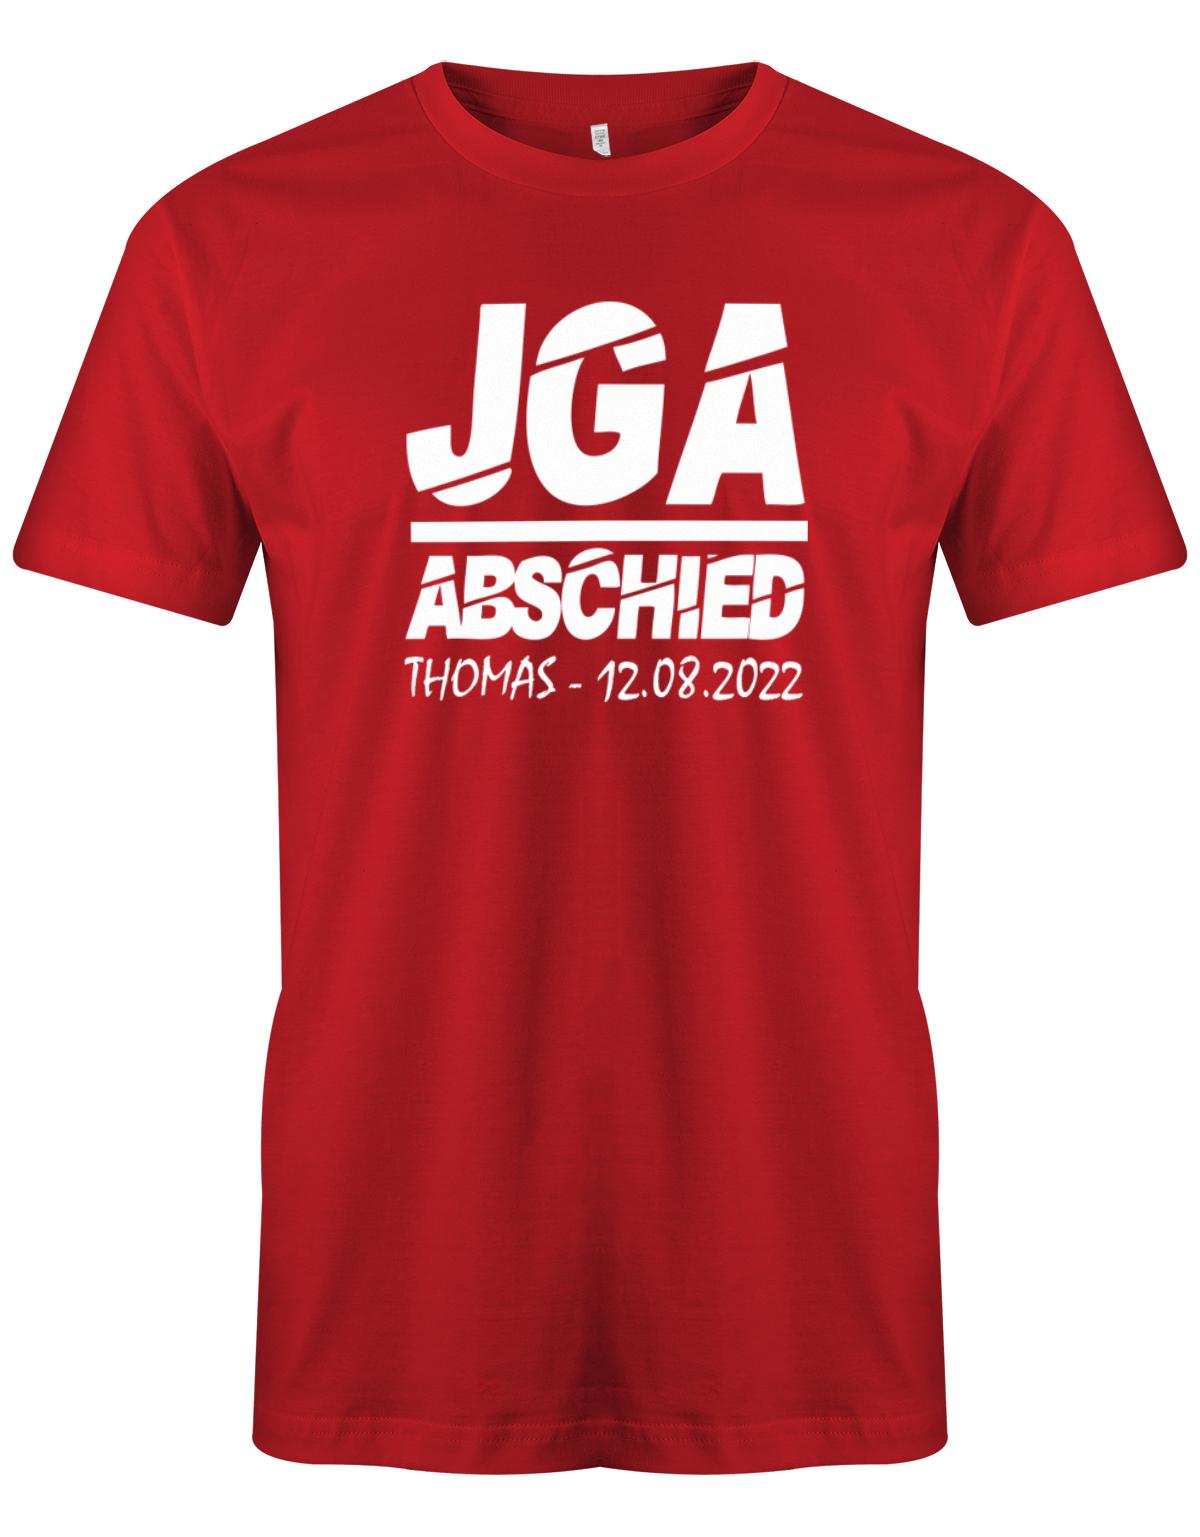 JGA-Abschied-mit-Name-und-Datum-Herren-Shirt-Rot